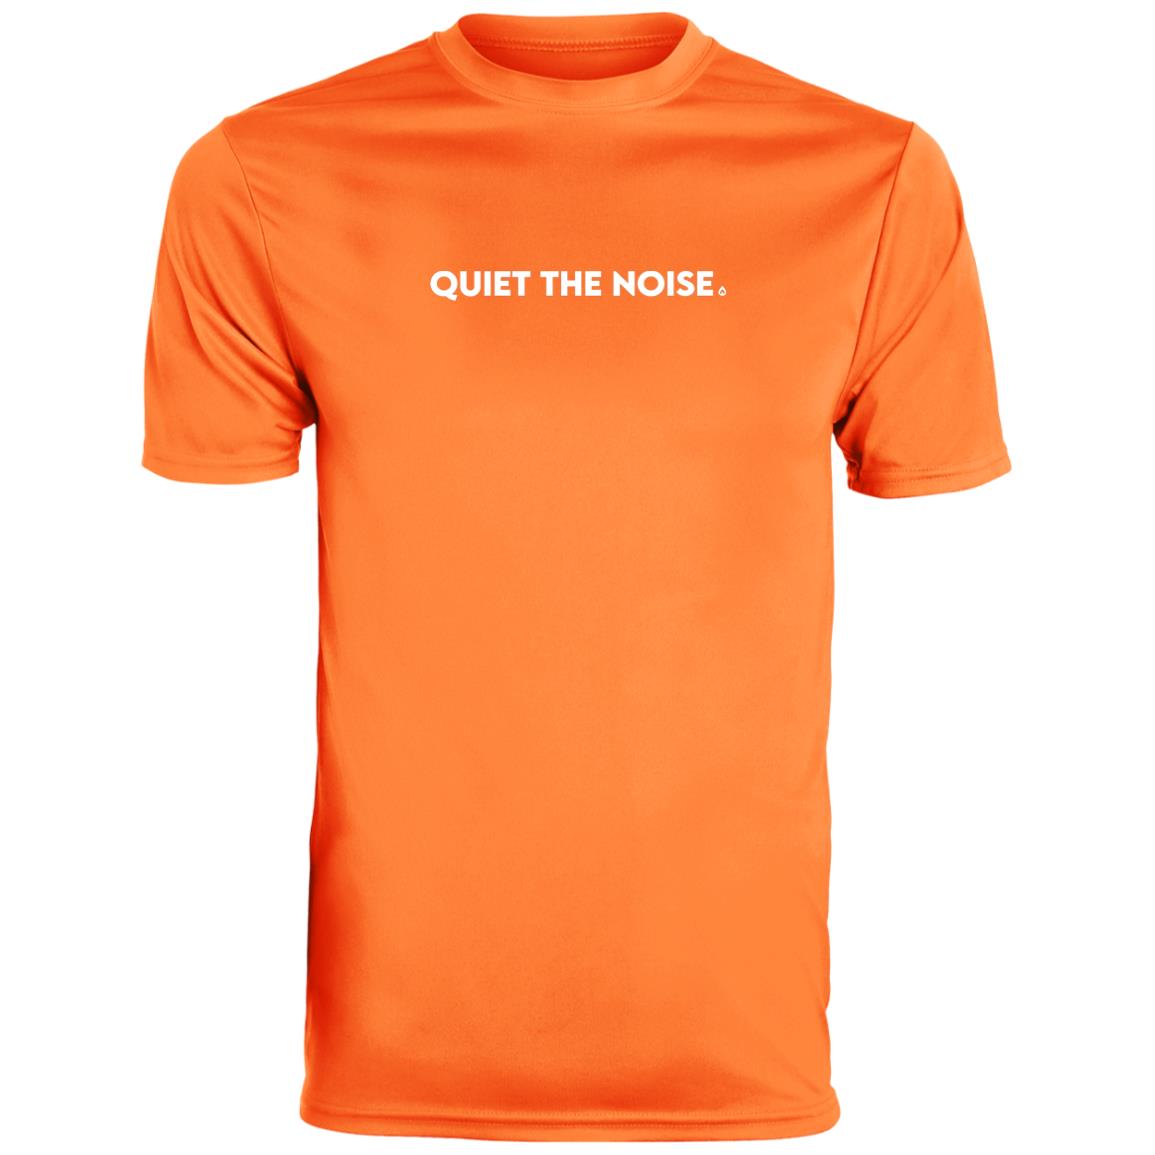 Quiet The Noise Men's Performance T-Shirt